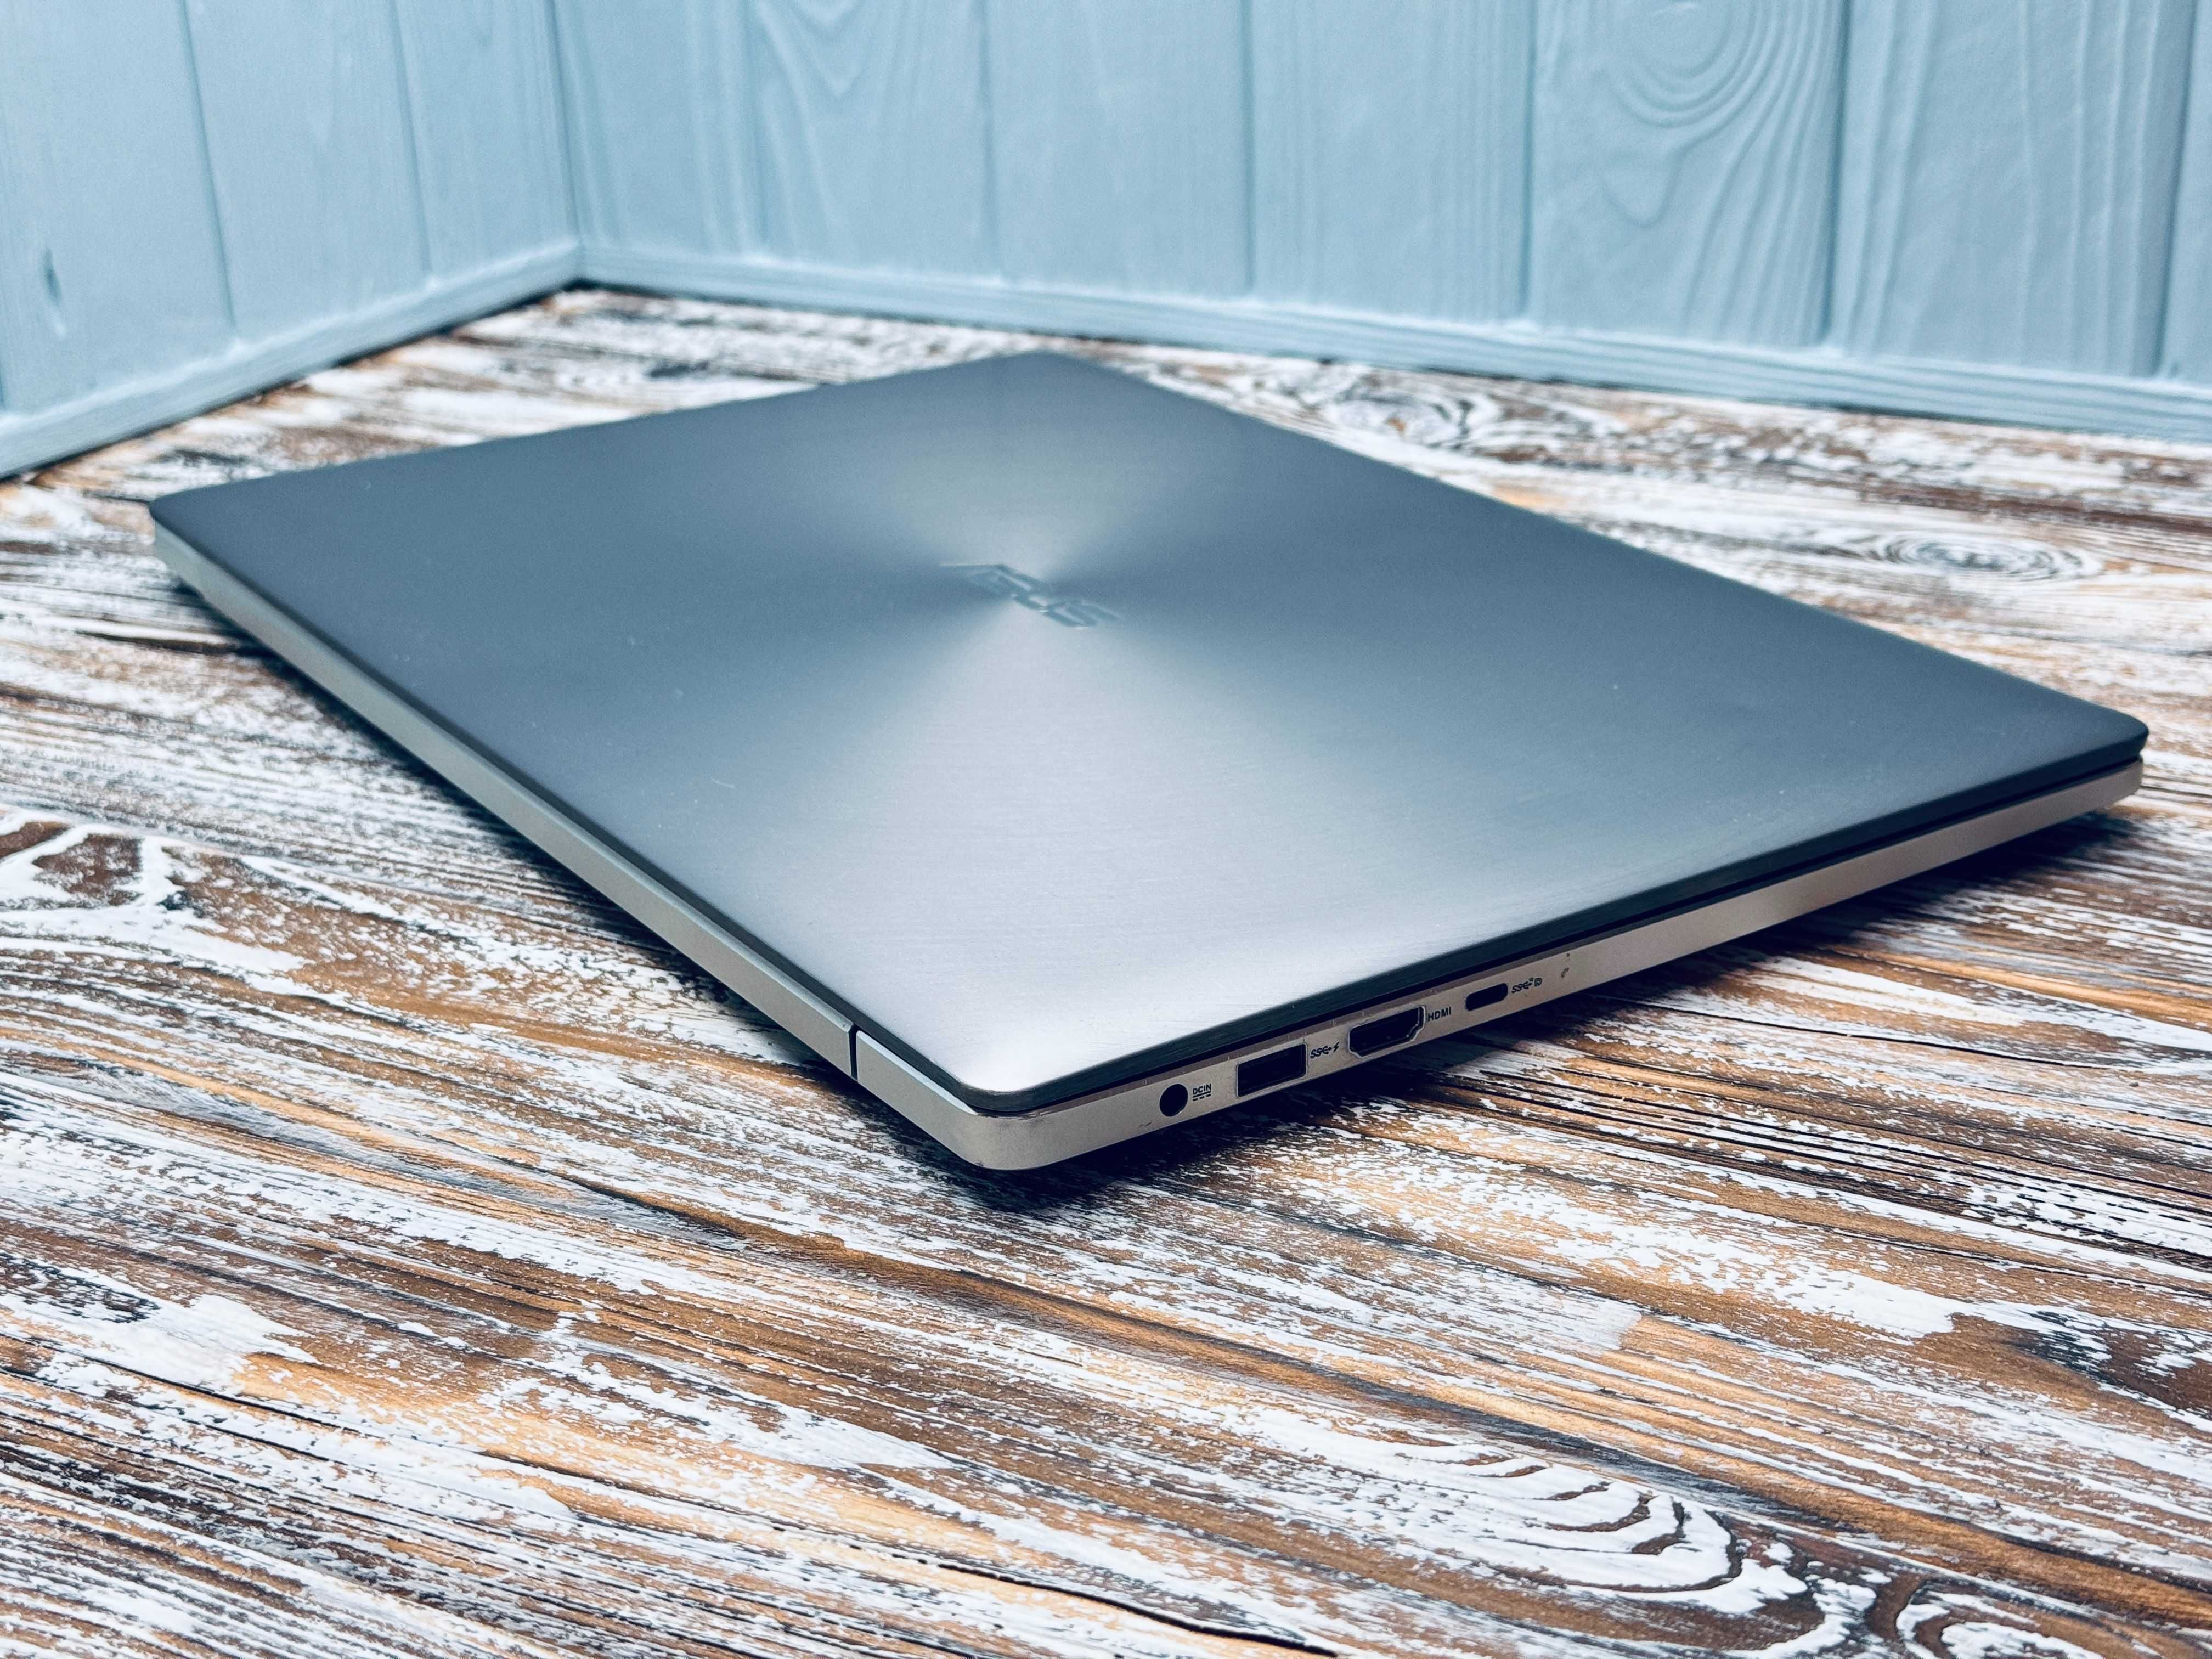 АКЦІЯ! Ноутбук для роботи та ігор Asus Zenbook UX501/GTX 960M 4 GB